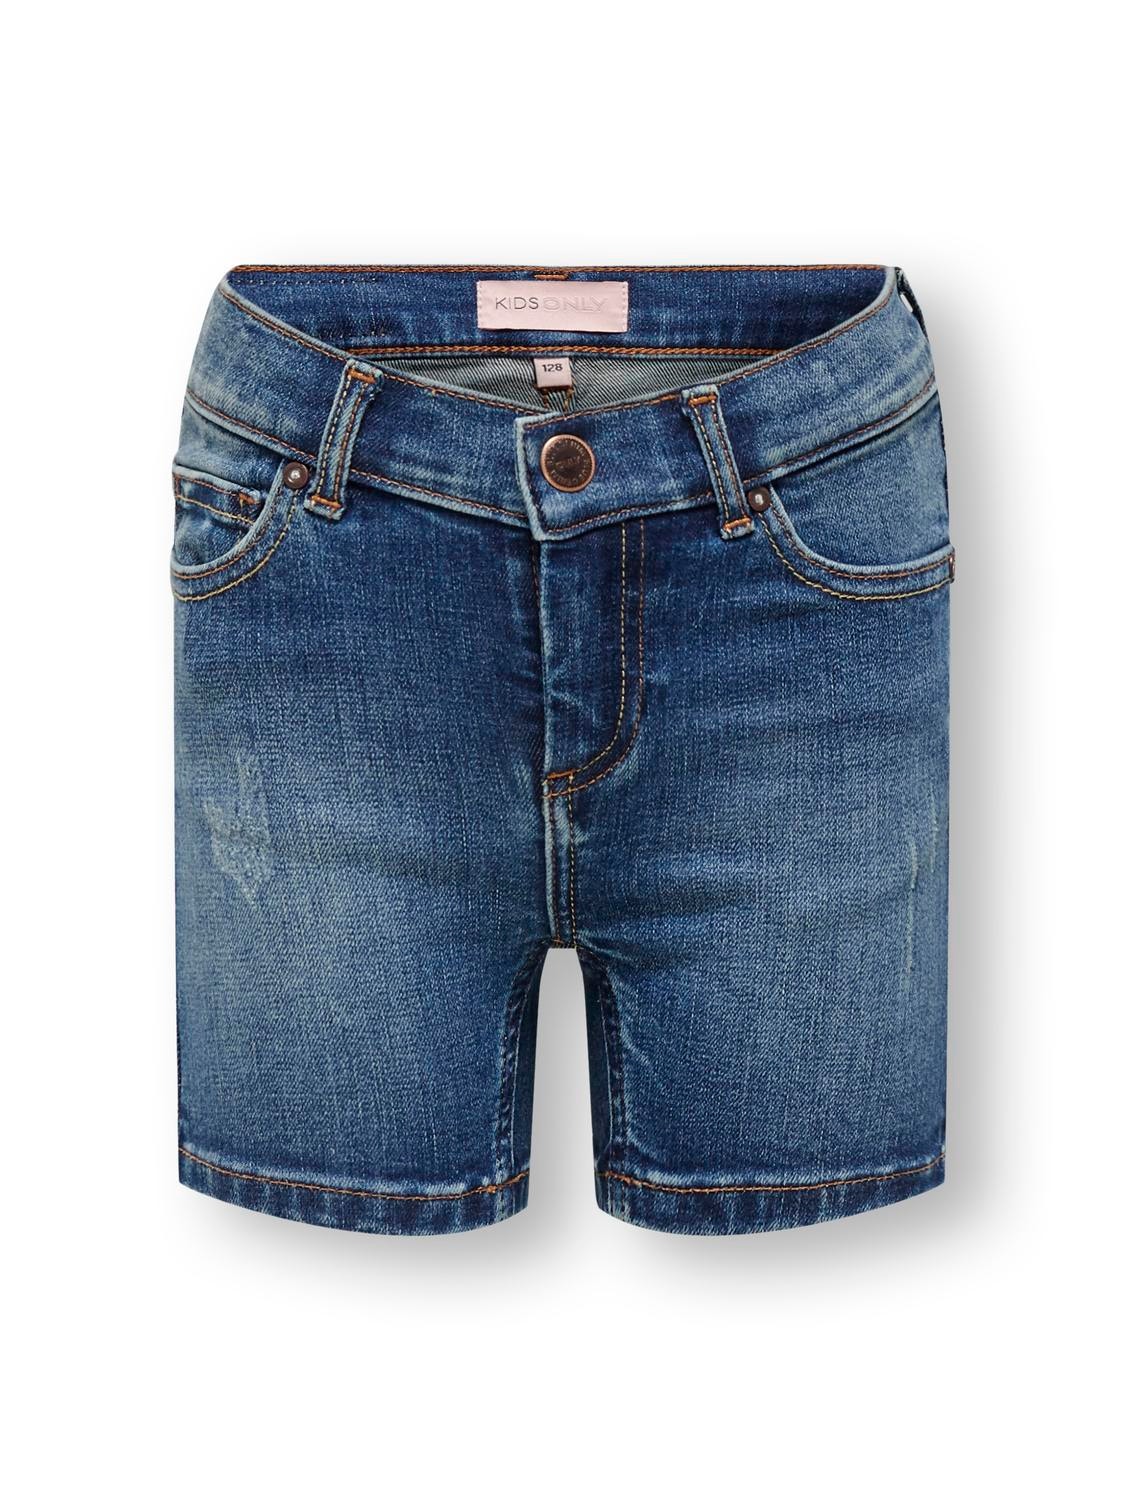 ONLY Skinny Fit Shorts -Medium Blue Denim - 15201450